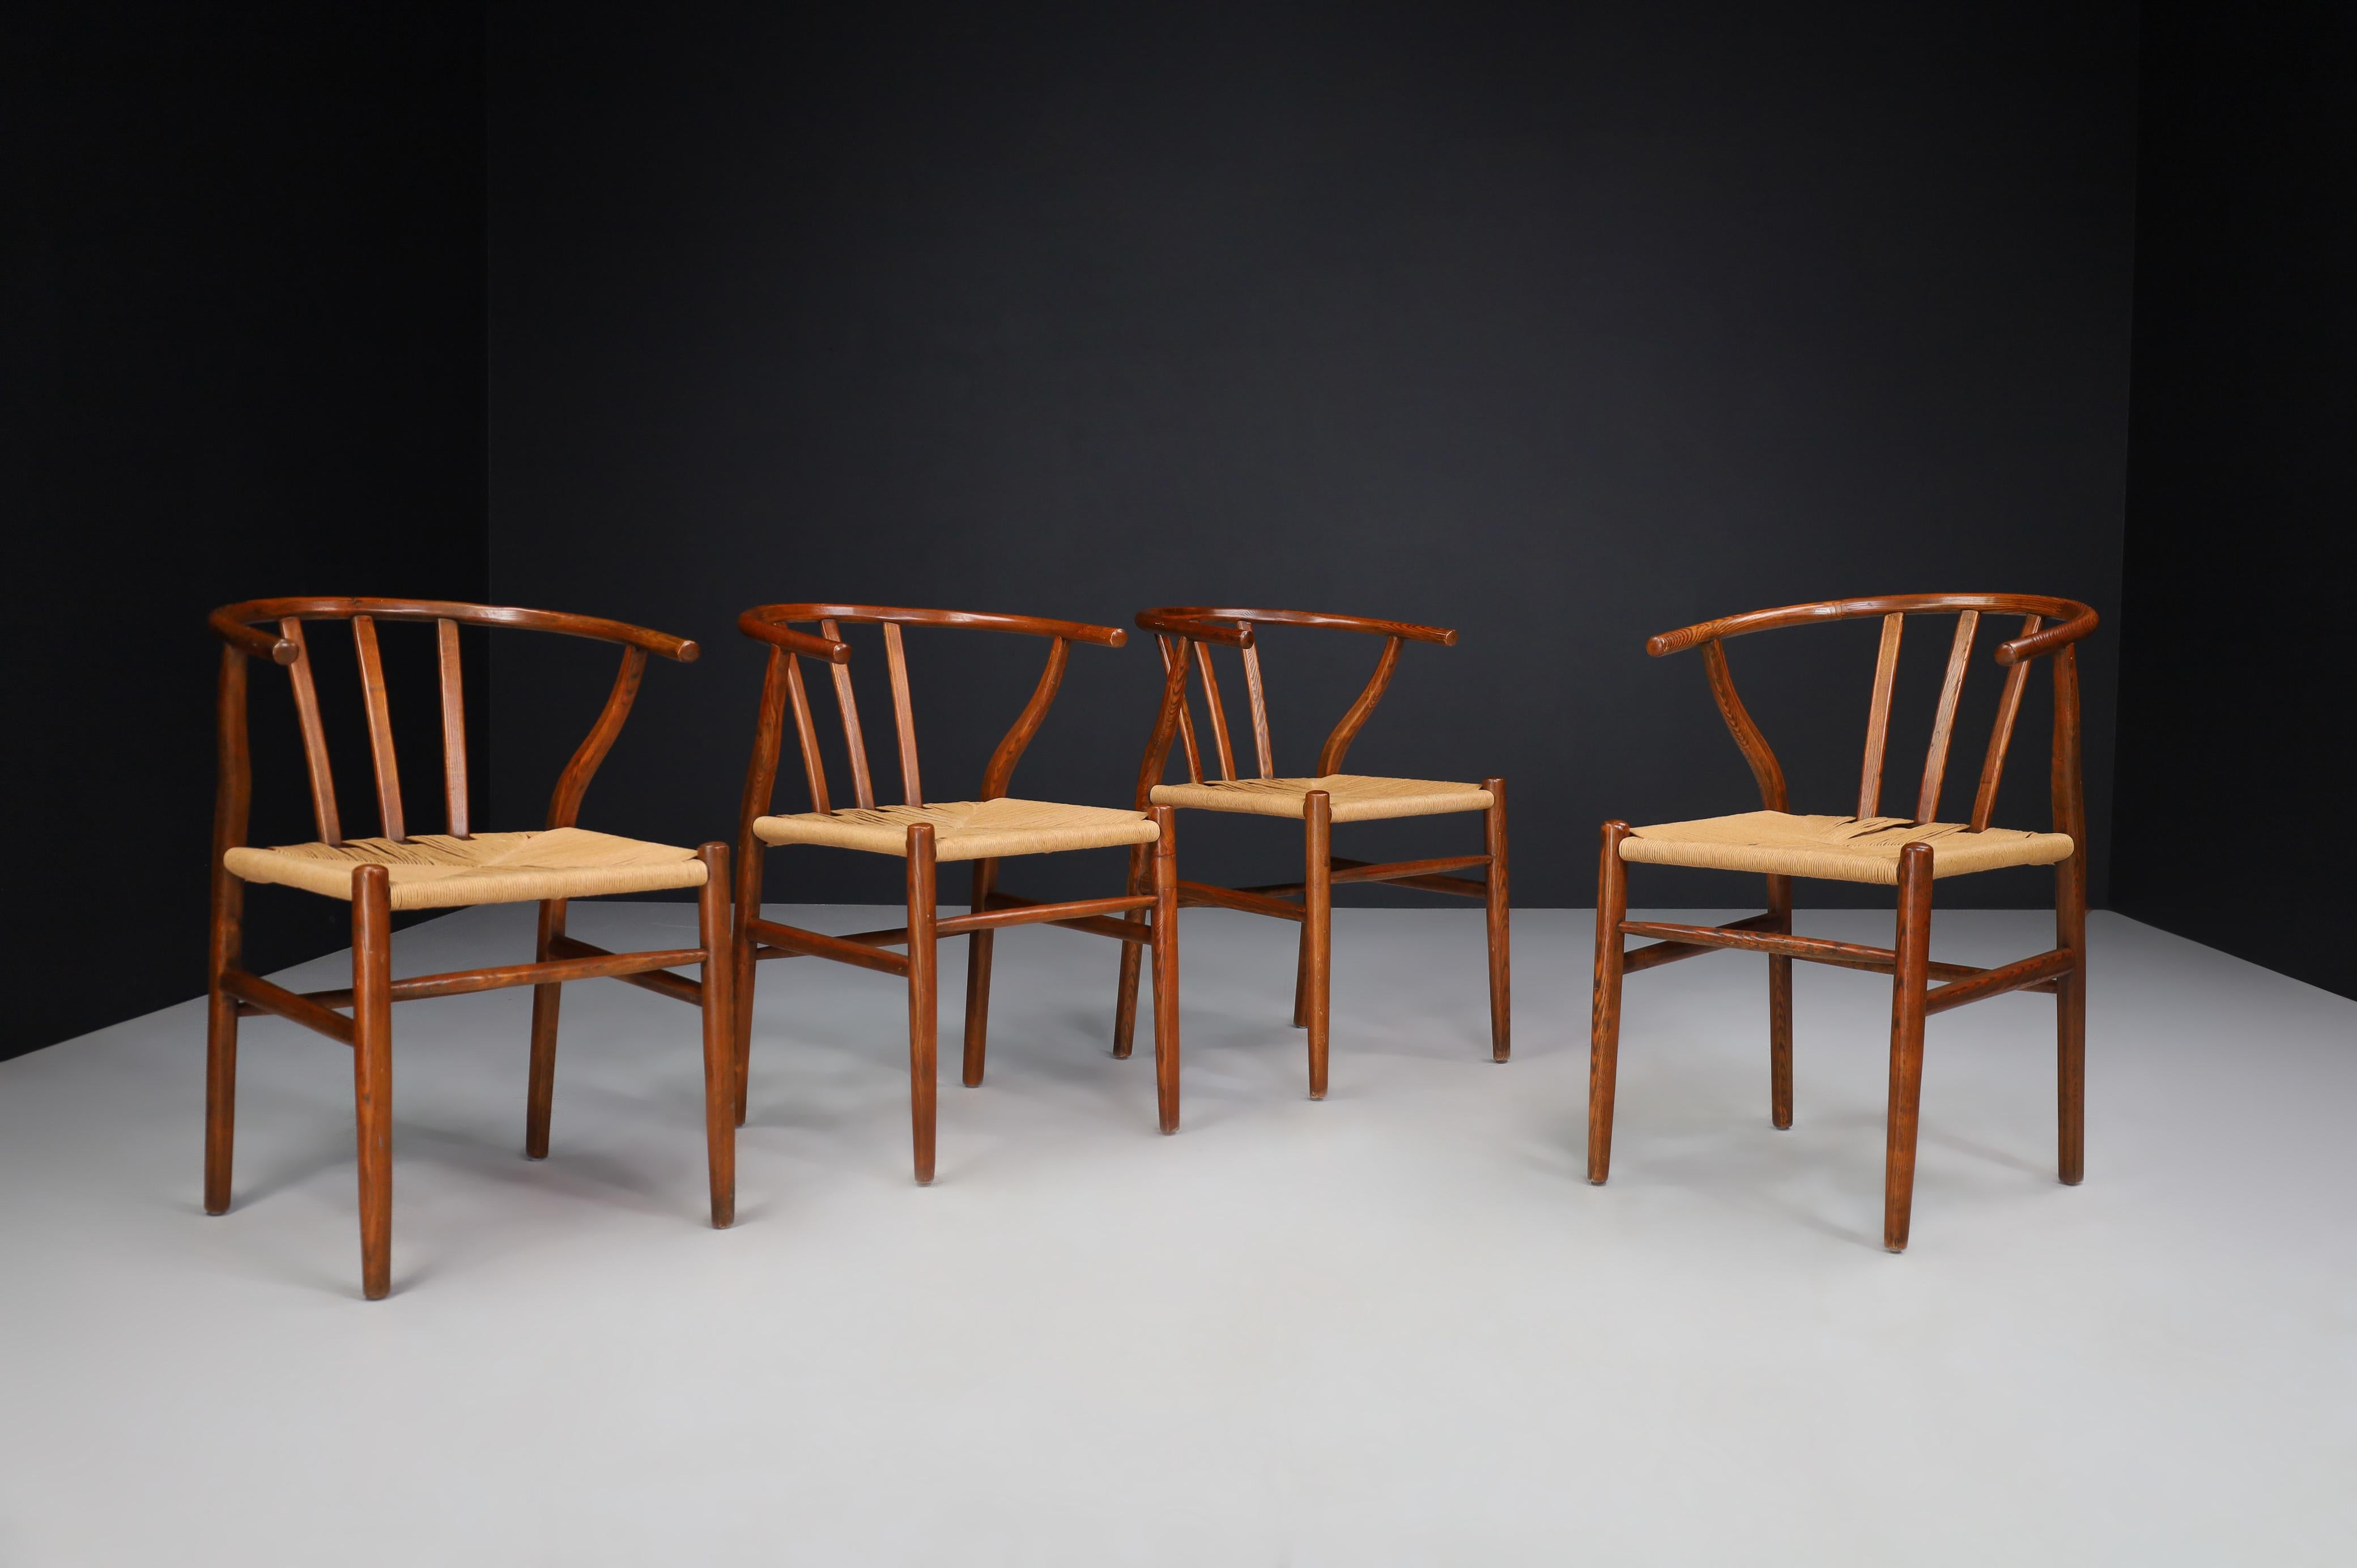 Fauteuils ou chaises à manger en chêne et corde à papier, Danemark Années 1960.

Ces chaises sont fabriquées en chêne massif et les sièges sont en cordon de papier tissé à la main. Les chaises sont en bon état vintage et peuvent être utilisées comme